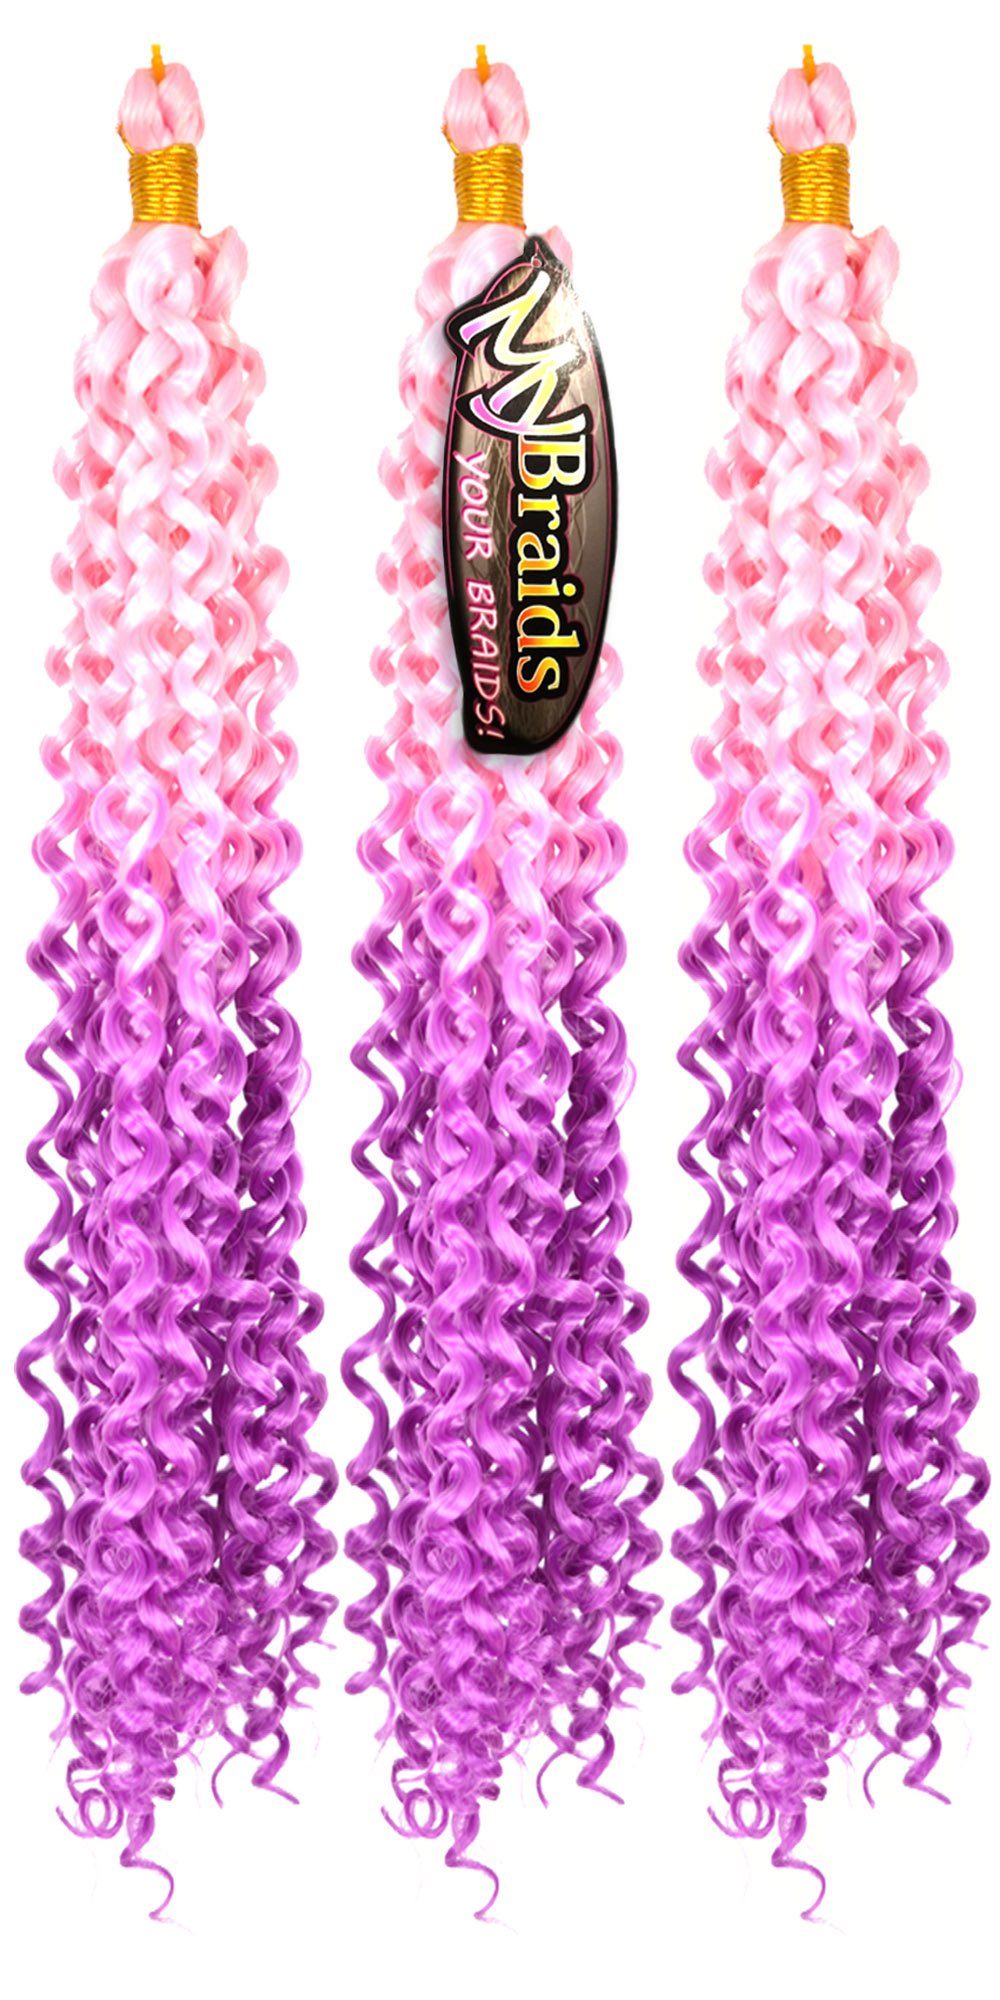 MyBraids YOUR BRAIDS! Kunsthaar-Extension Deep Wave Crochet Braids 3er Pack Flechthaar Ombre Zöpfe Wellig 22-WS Hellrosa-Helles Purpur